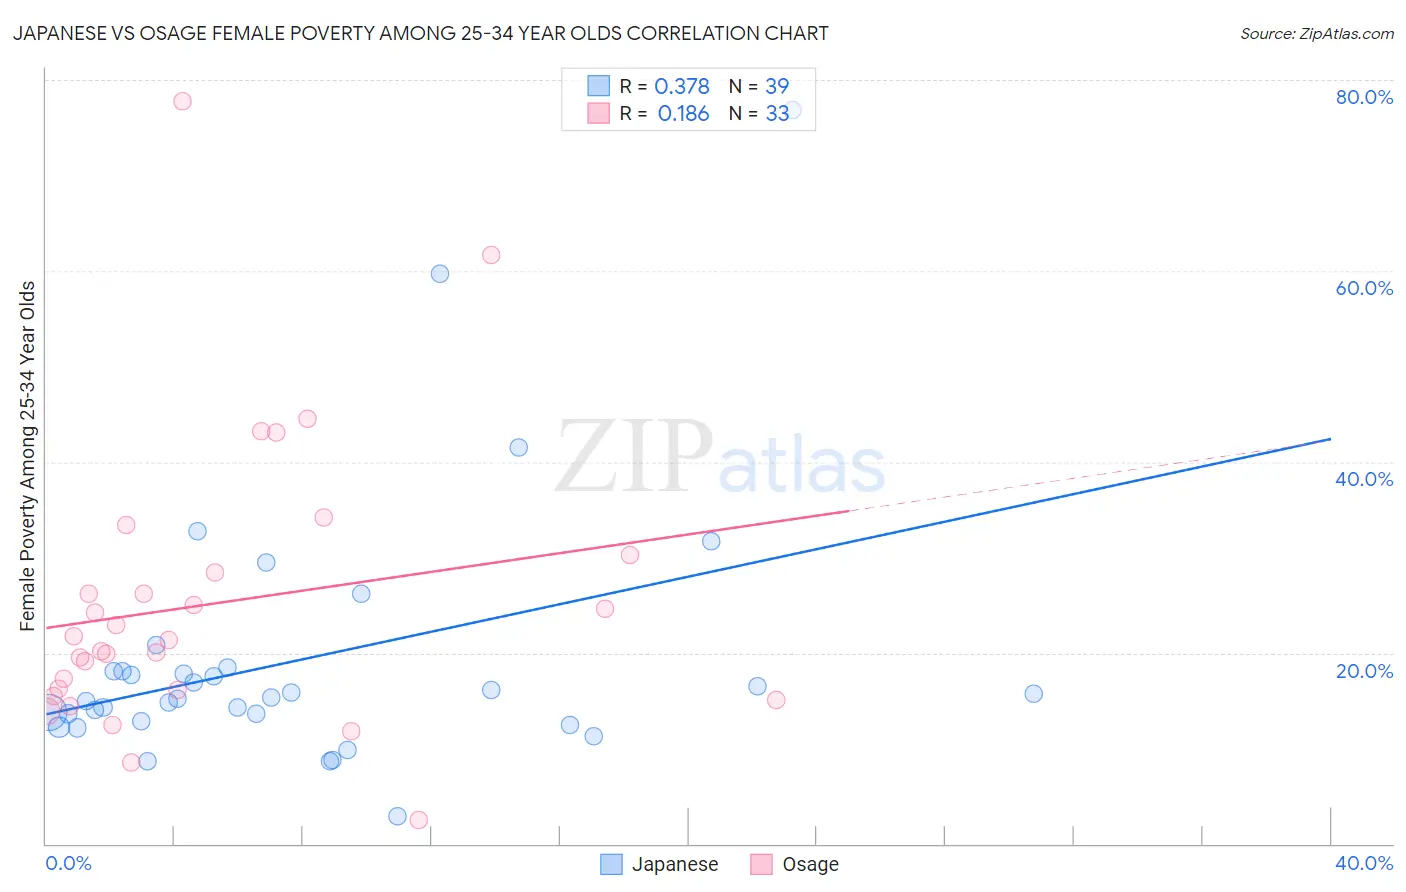 Japanese vs Osage Female Poverty Among 25-34 Year Olds